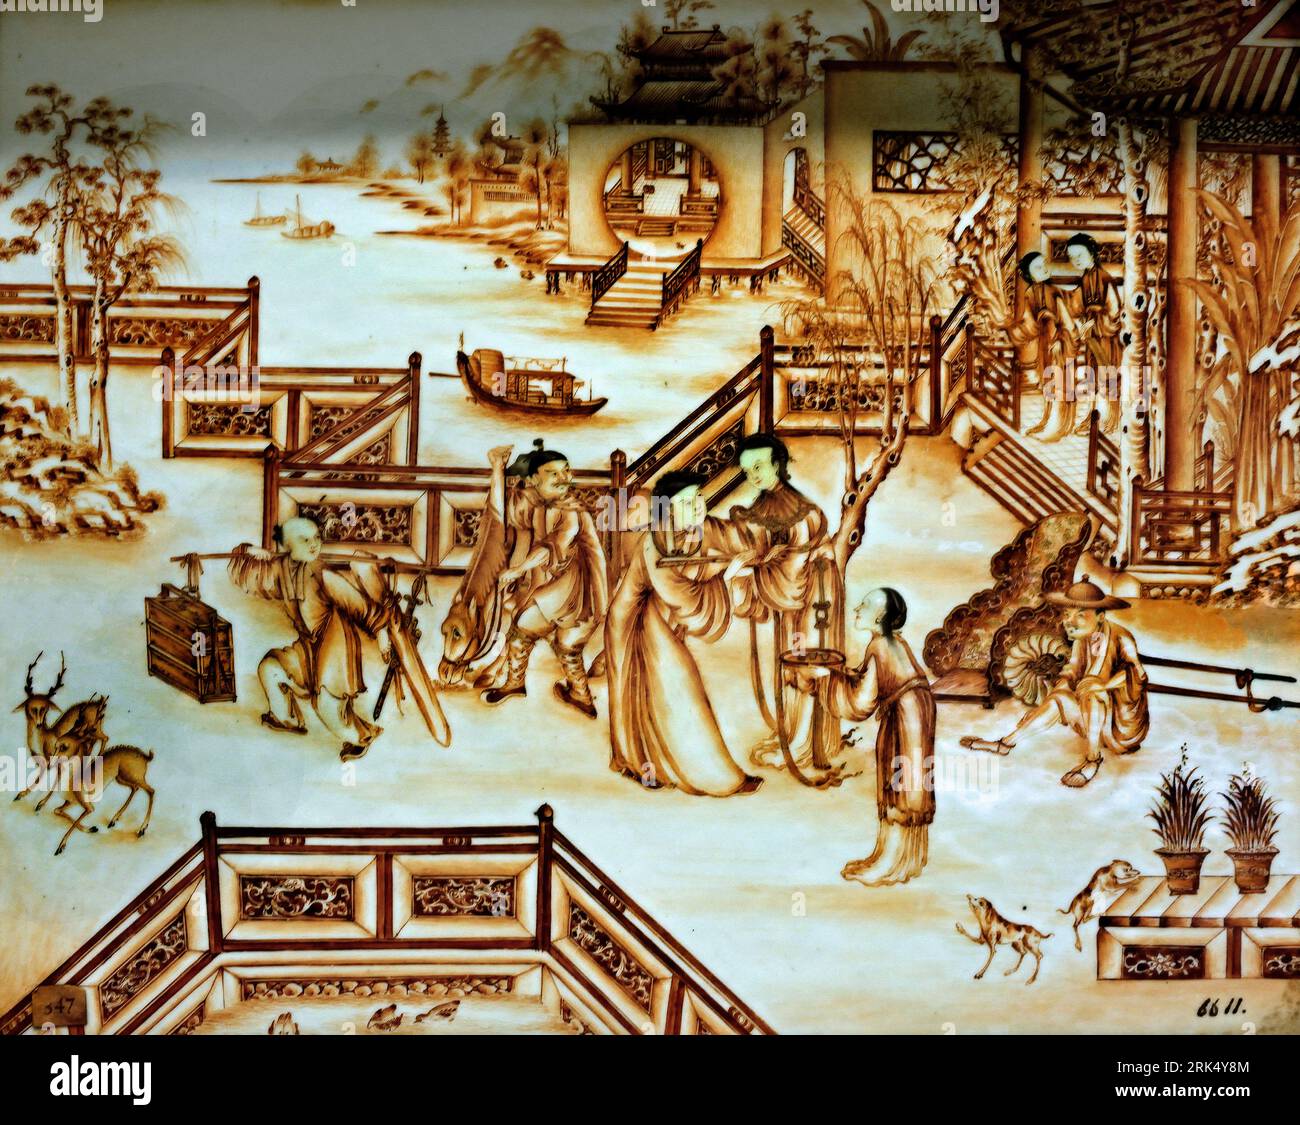 Tafel mit Figuren auf einer umzäunten Terrasse in der Nähe eines Pavillons China. 1770 - 775 Qing-Dynastie (1644-1912) / Qianlong-Periode (1736-1795) Chinesischer Porzellan (Metall) Rahmen: Holz (Pflanzenmaterial) Länge 41 cm x Breite 34 cm Darstellung zeigt eine Abschiedsszene einer Frau und eines Mannes auf einer umzäunten Terrasse für einen Pavillon Stockfoto